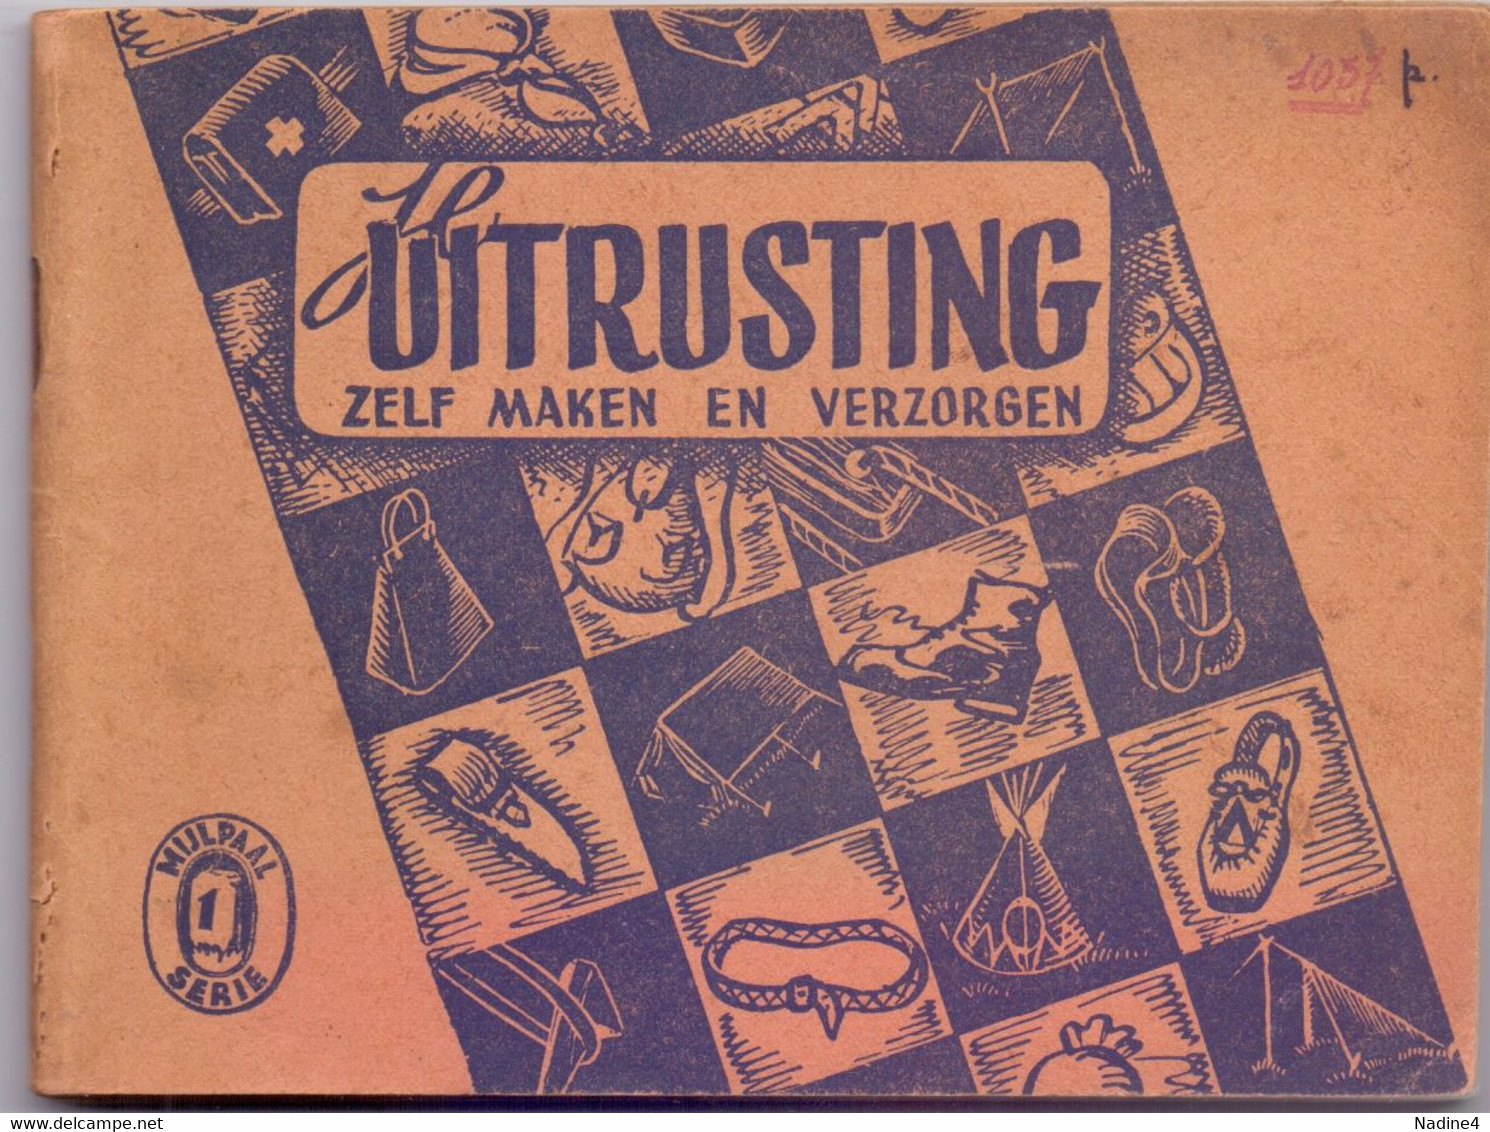 Scoutisme Scouts Padvinderij - Je Uitrusting - Ph. Tossijn - Uitg.De Pijl Leuven - 1942 - Kids